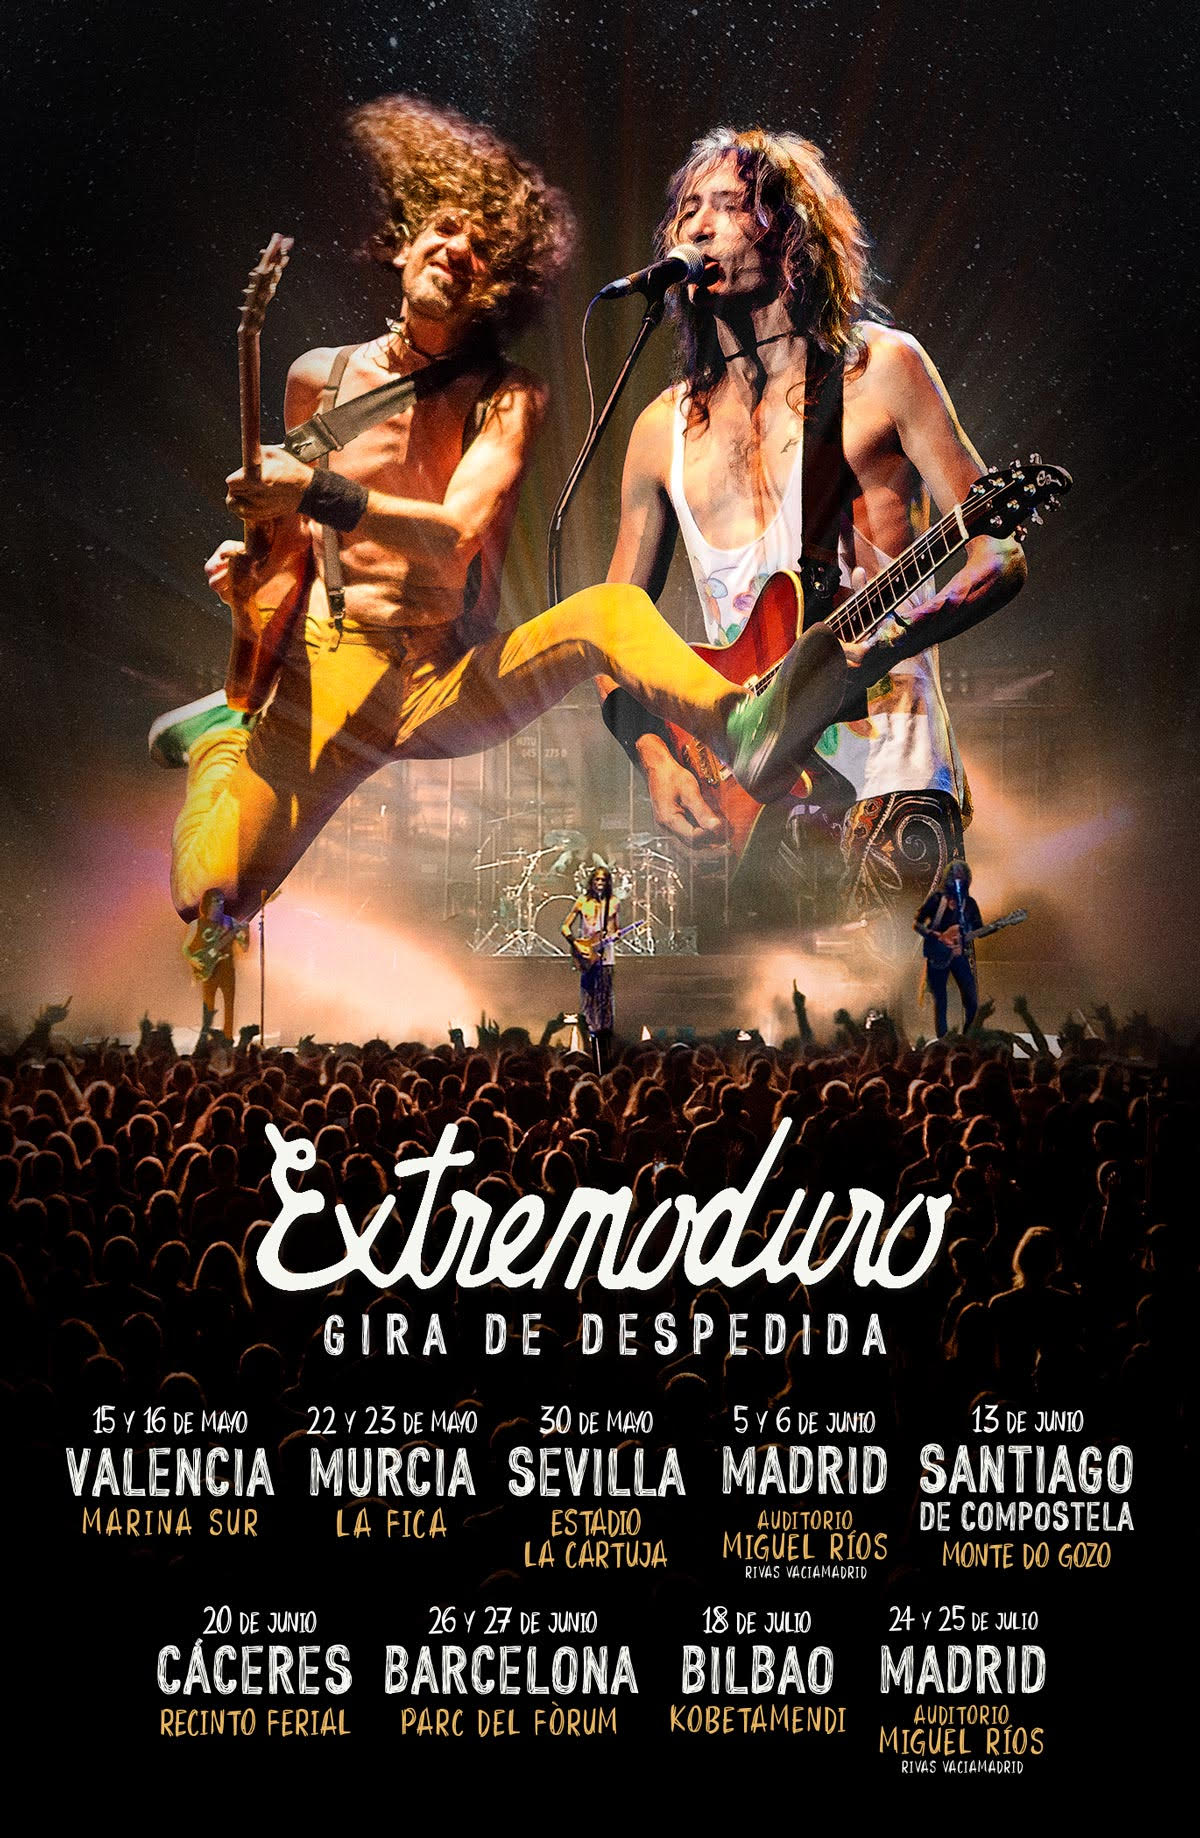 Concierto Extremoduro by Gratis in Barcelona